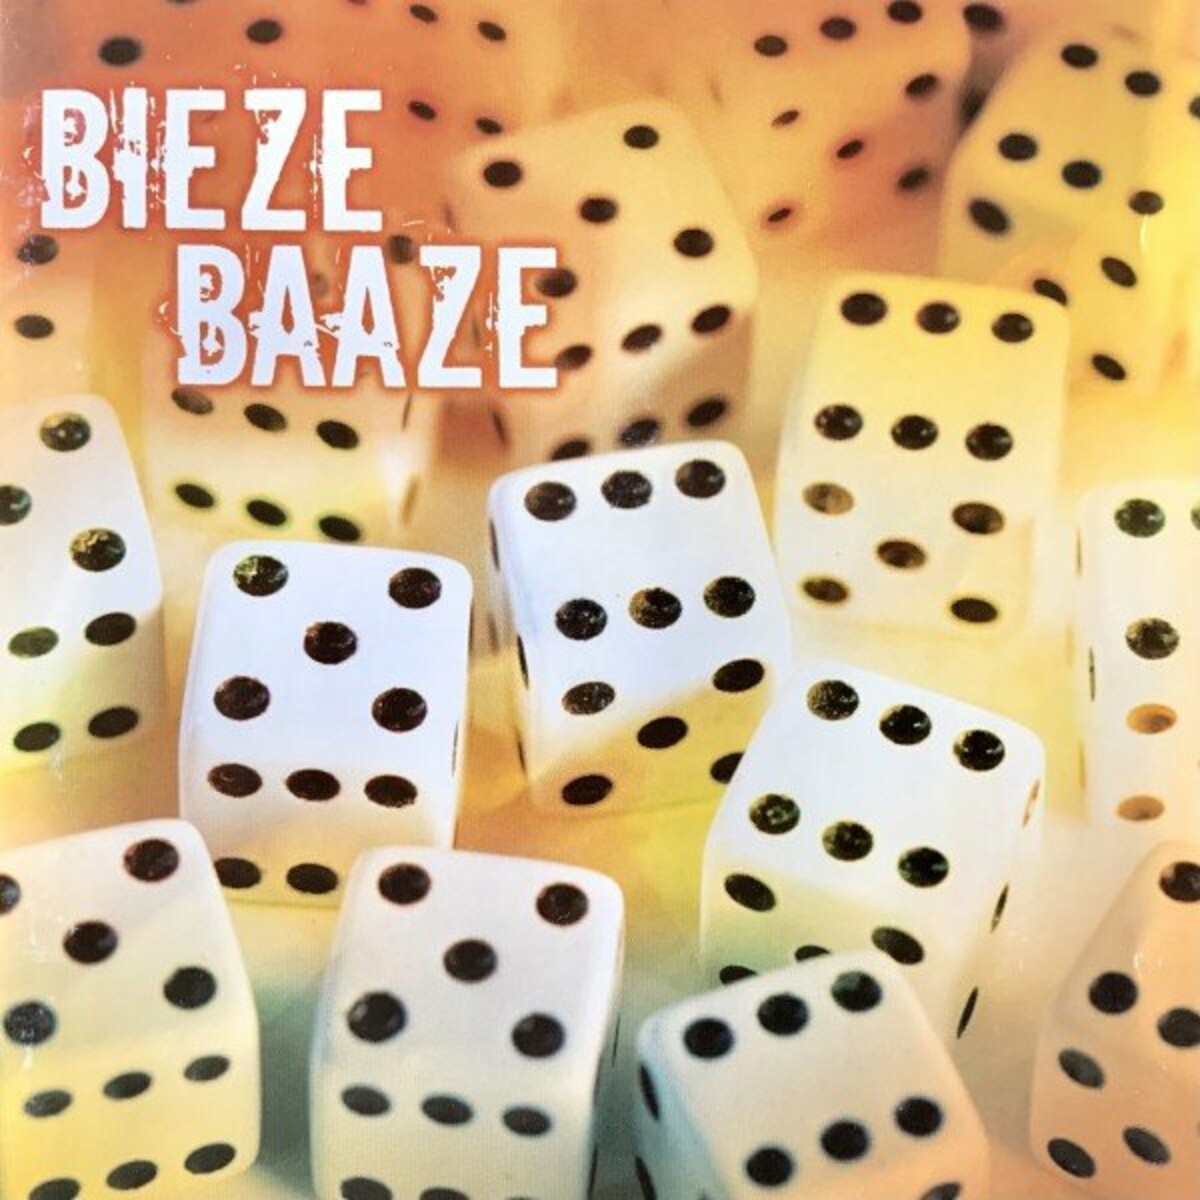 Biezebaaze - Veel 5en EN 6en (2022)